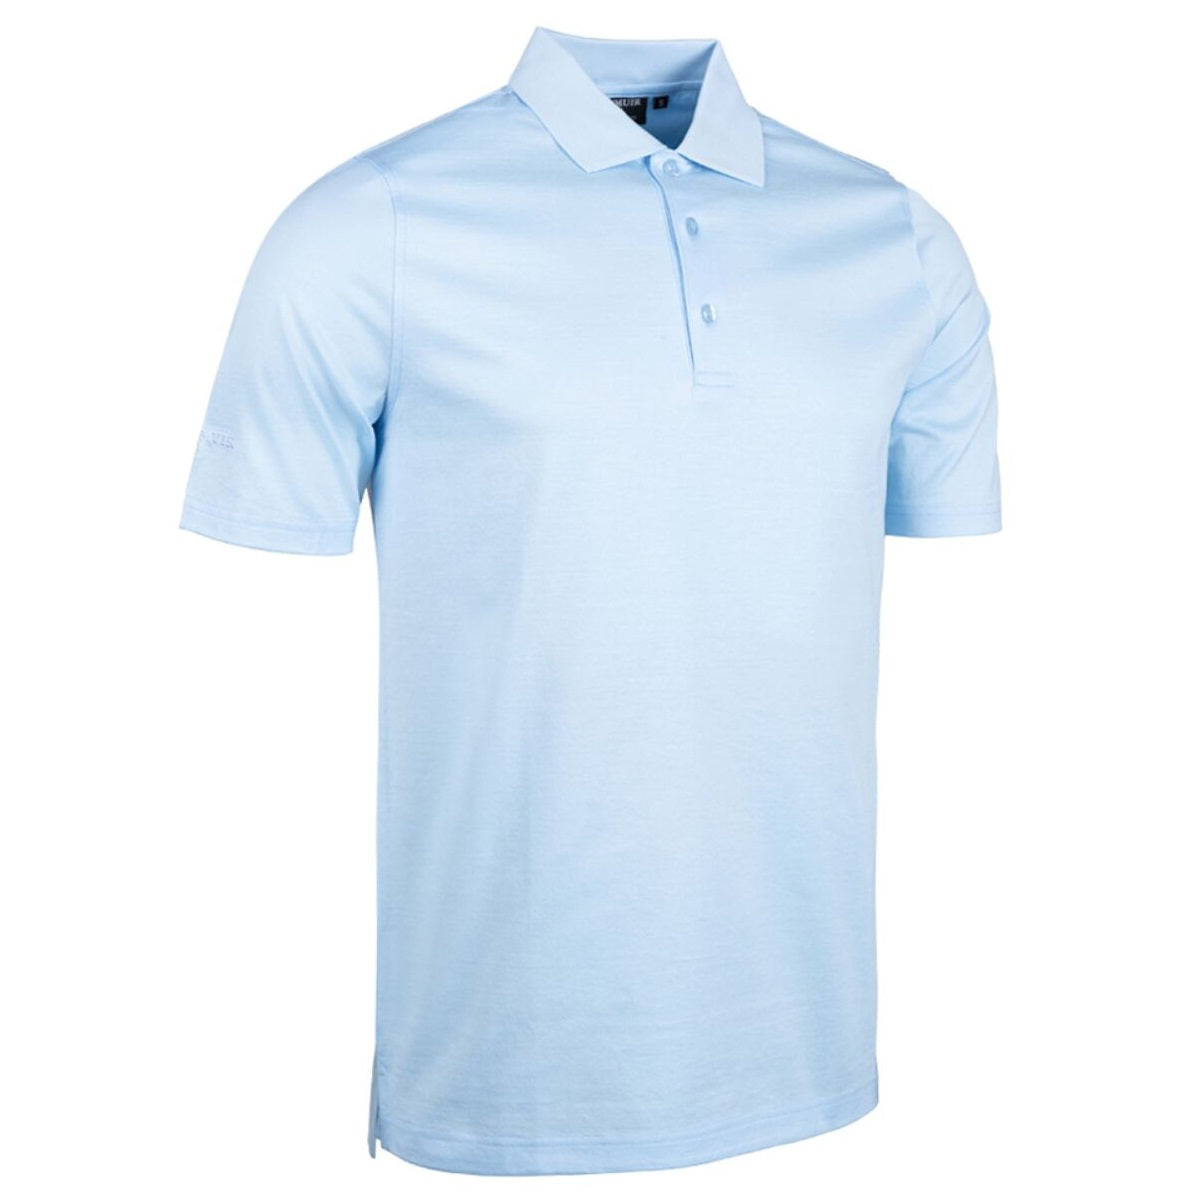 GLENMUIR Tarth Mercerised Cotton Polo Shirt - Mens - Paradise